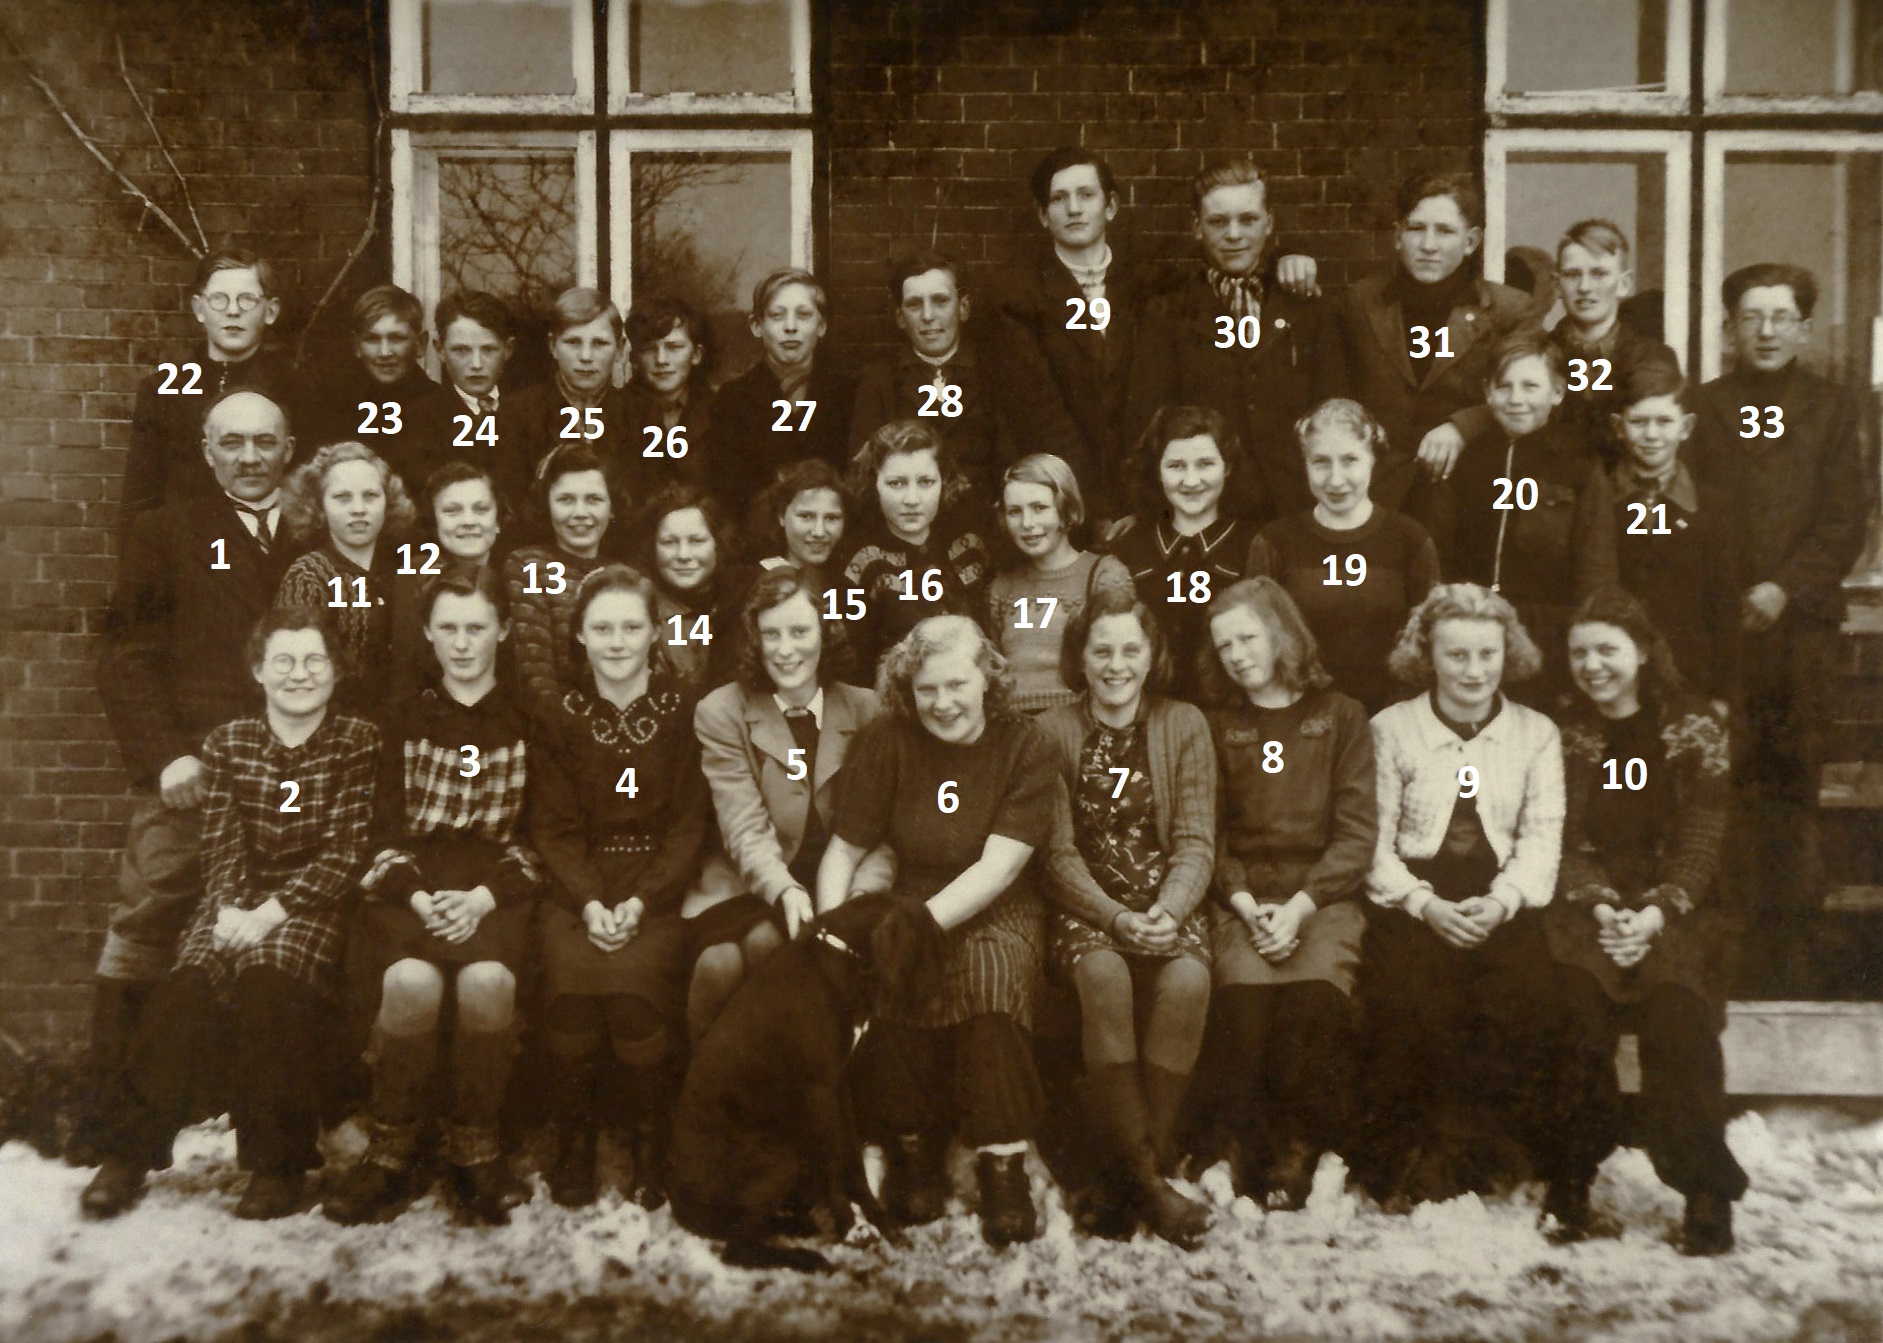 Sognemenighedens konfirmander fra Vinding og Vind fotograferet forud for deres konfirmation i marts 1947. Klik på billedet for at se det i stort format.